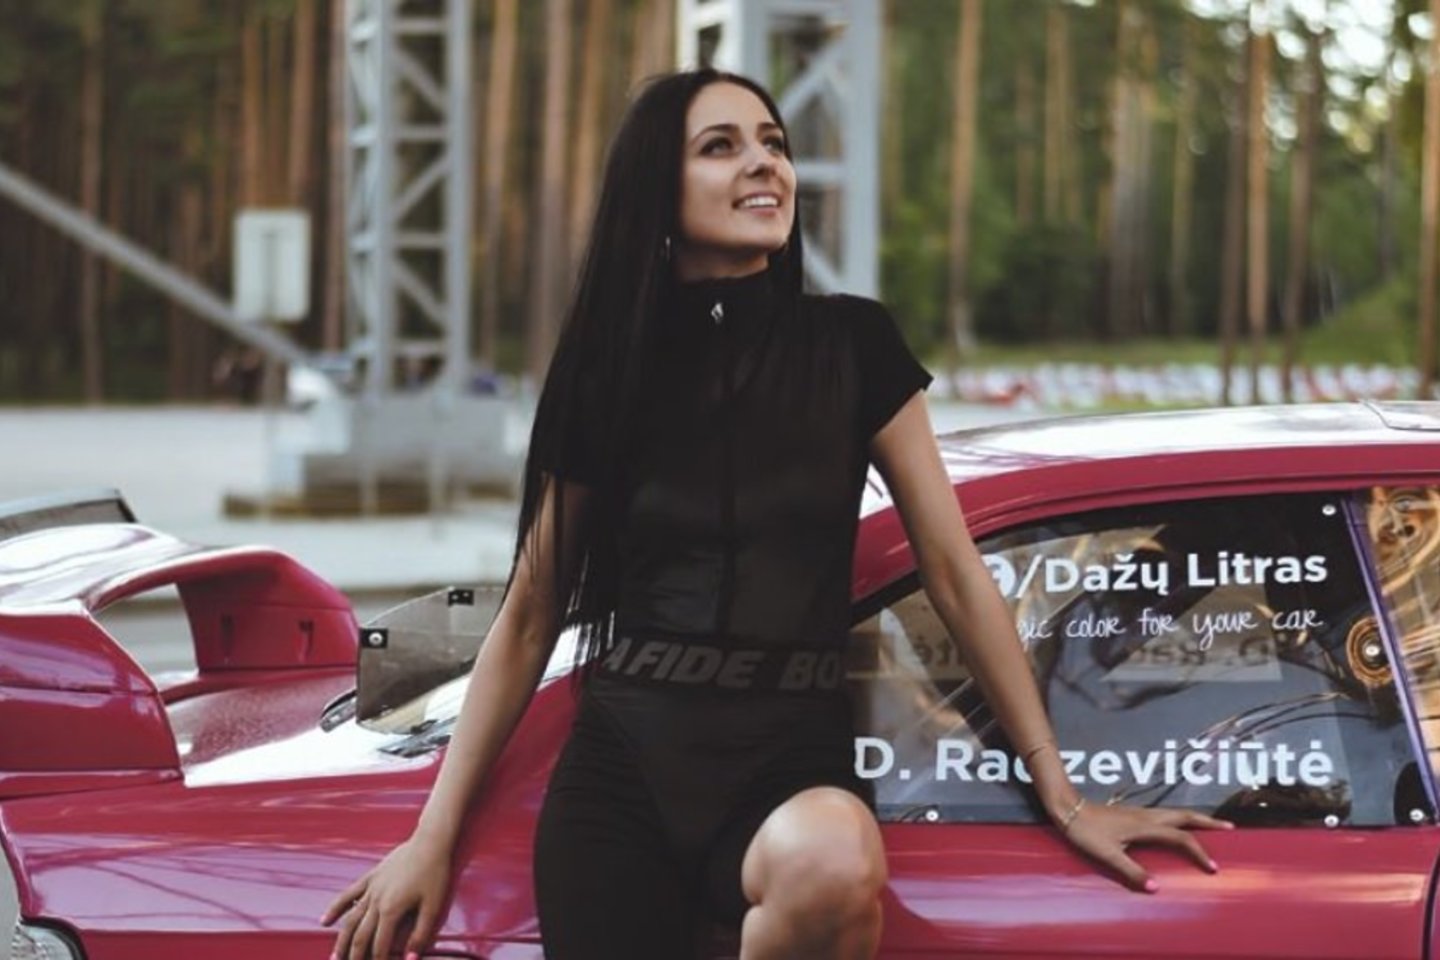 Pažiūrėjus į dailią, gležną 29 metų Deimantę Radzevičiūtę, ko gero, niekas nepasakytų, kad ji aistringa automobilių sporto dalyvė.<br>Ievos Dovidauskienės nuotr.